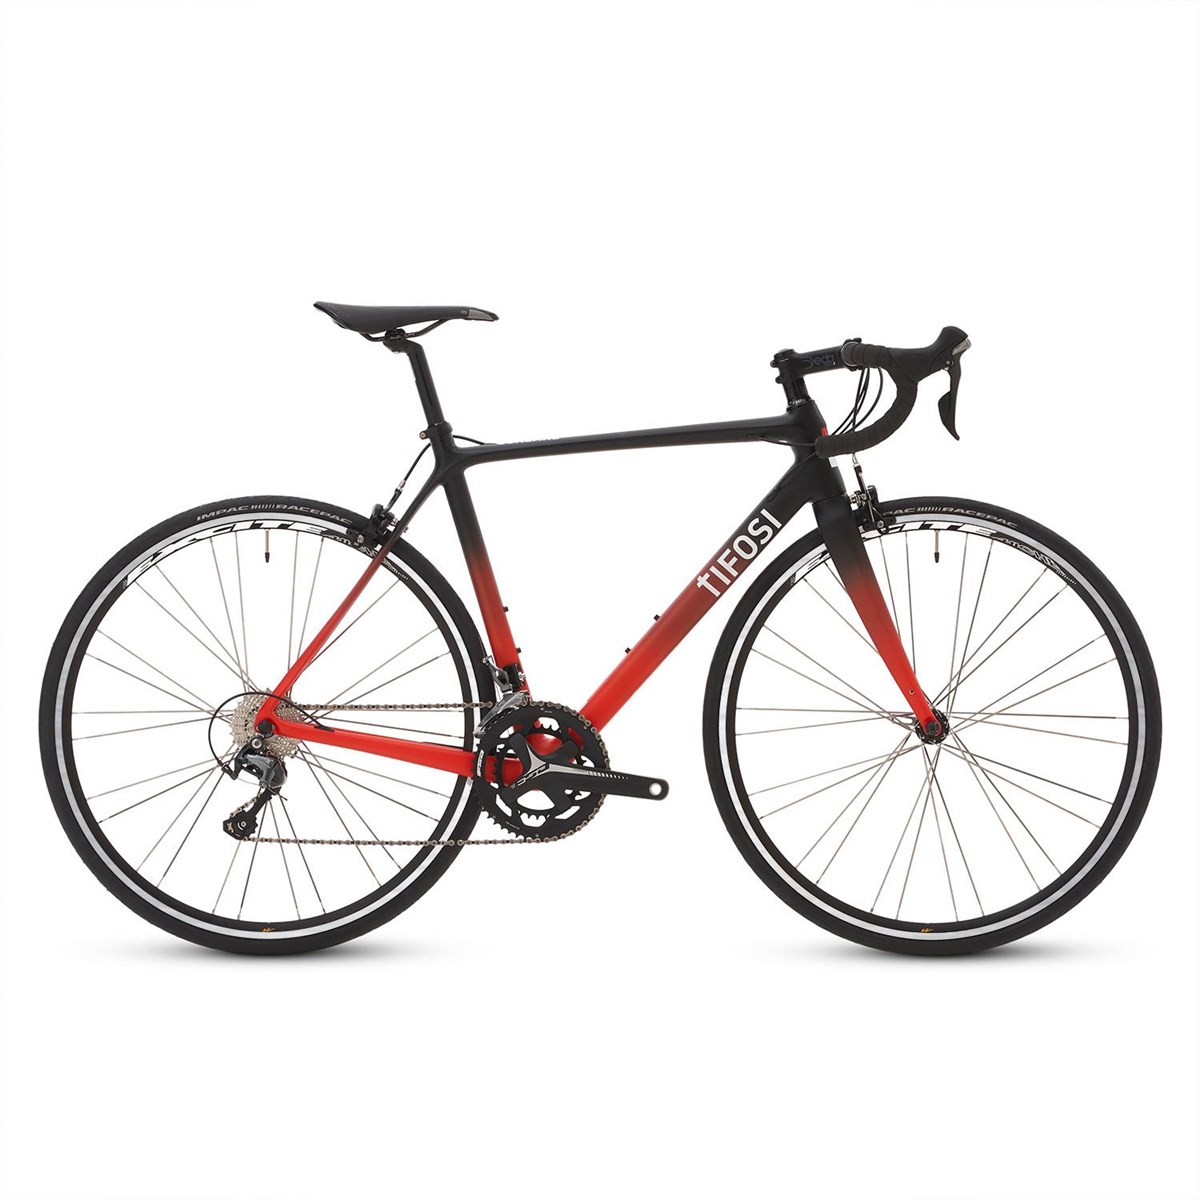 Tifosi Scalare Tiagra 2021 - Road Bike product image